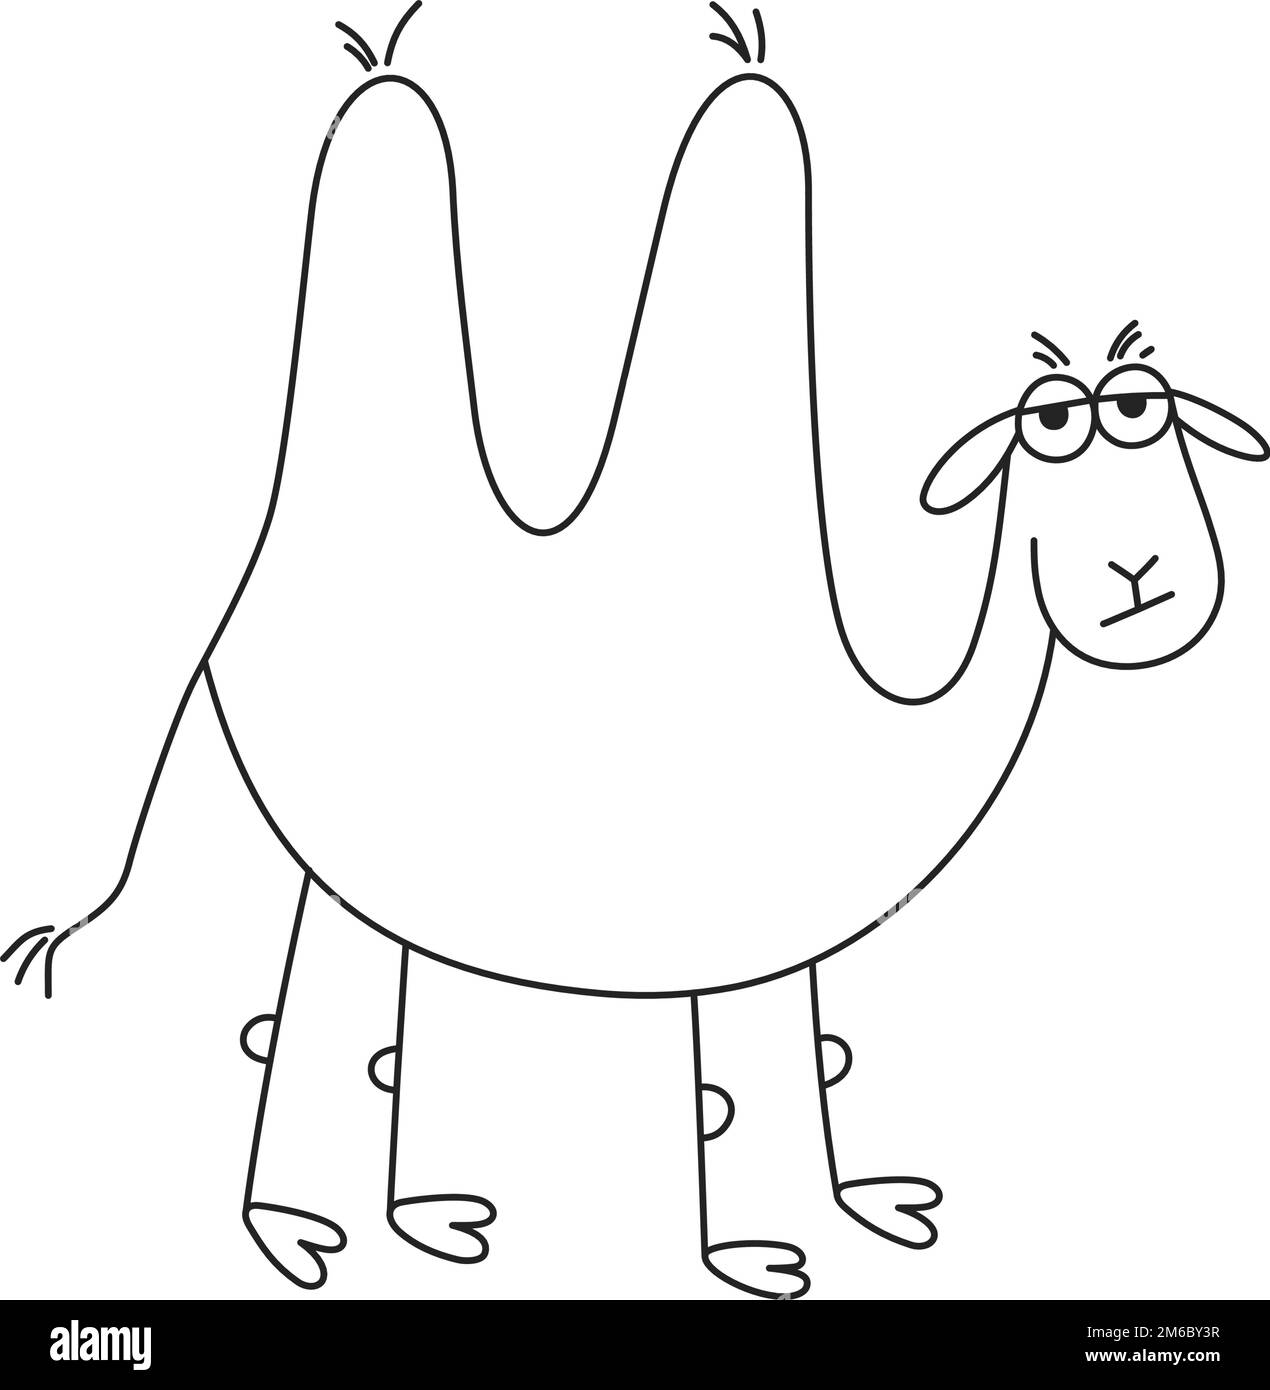 Dibujado a mano camello divertido. Triste cómic doodle de dos jorobadas camello niño dibujo. Ilustración vectorial aislado sobre fondo blanco Ilustración del Vector